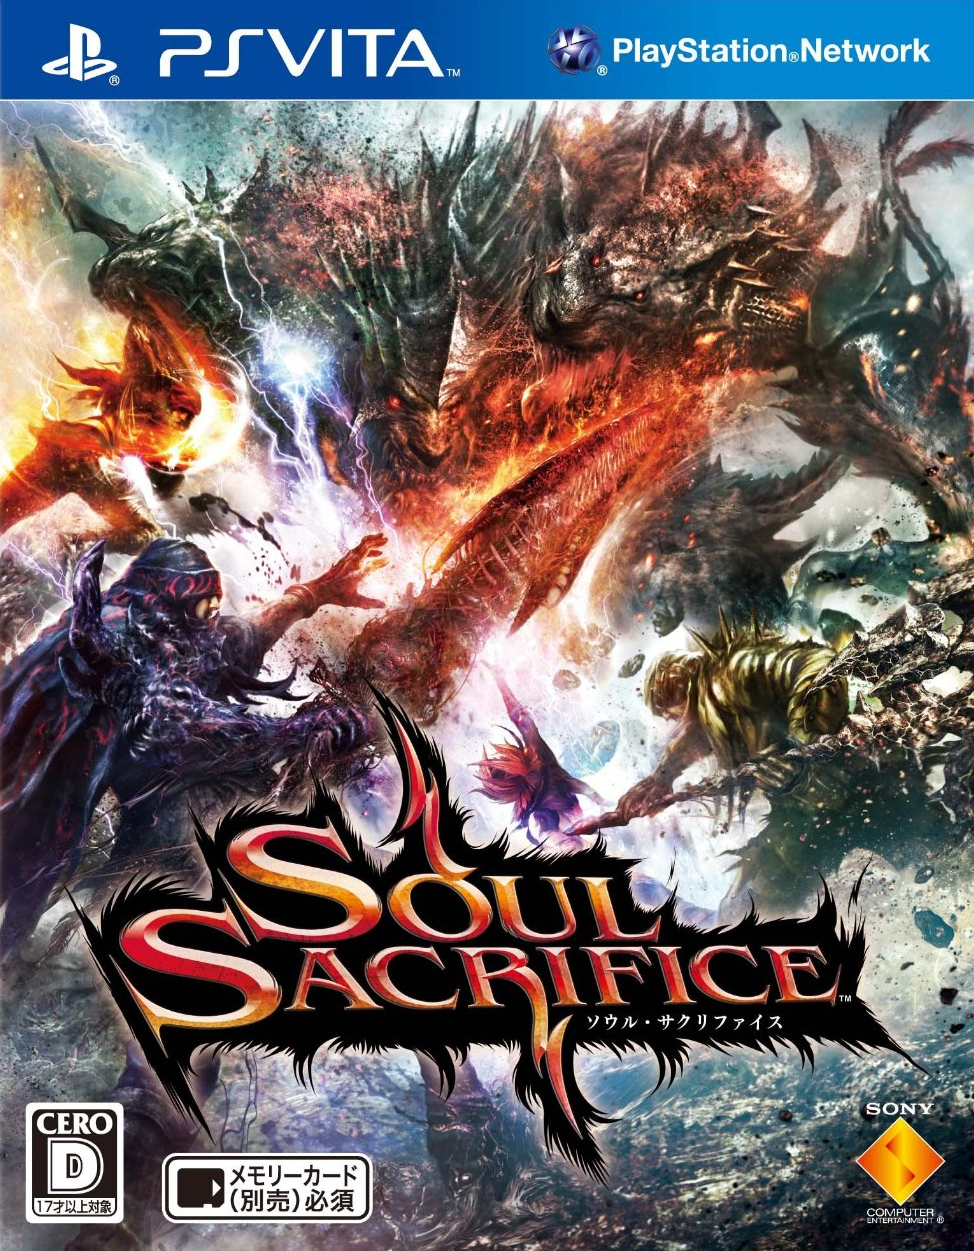 Soul Sacrifice jaquette japonaise 28.02.2013.